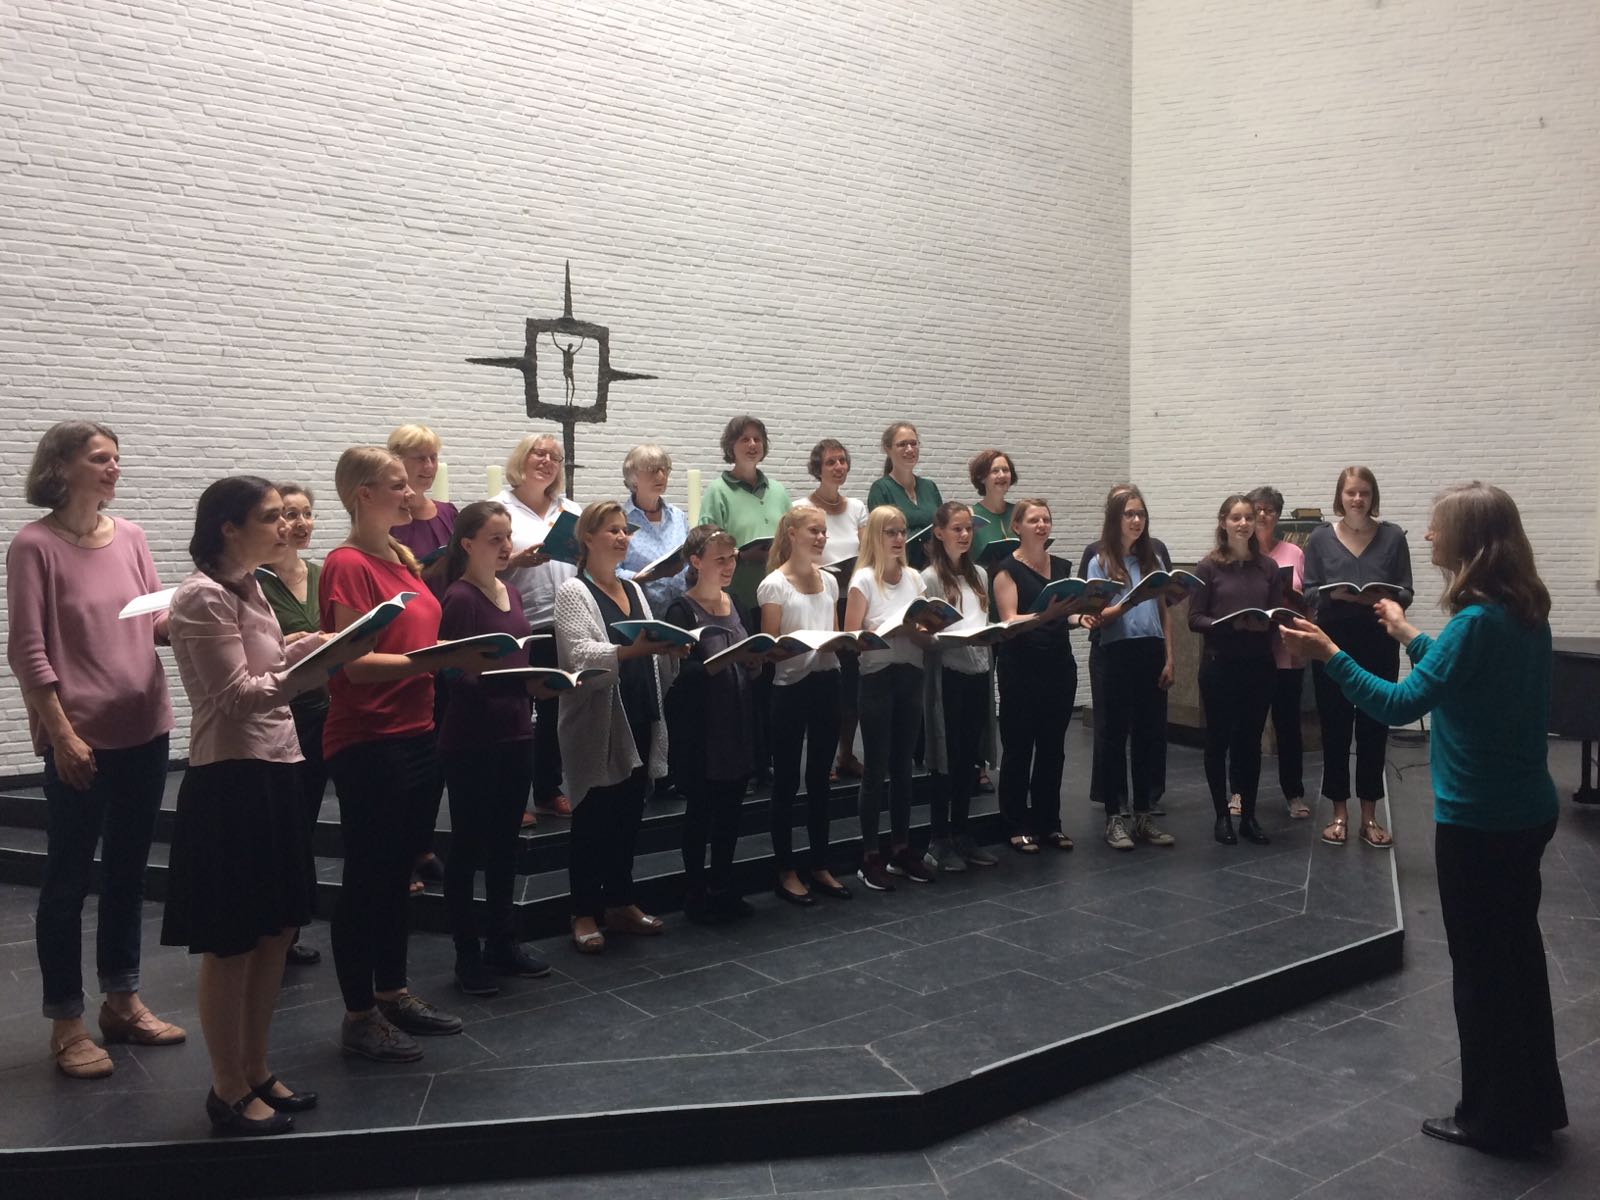 Gruppenbild des Projektchors Woman's Voice des Johann-Sebastian-Bach-Chors in der Ansgarkirche Hamburg Othmarschenoice des Johann-Sebastian-Bach-Chors